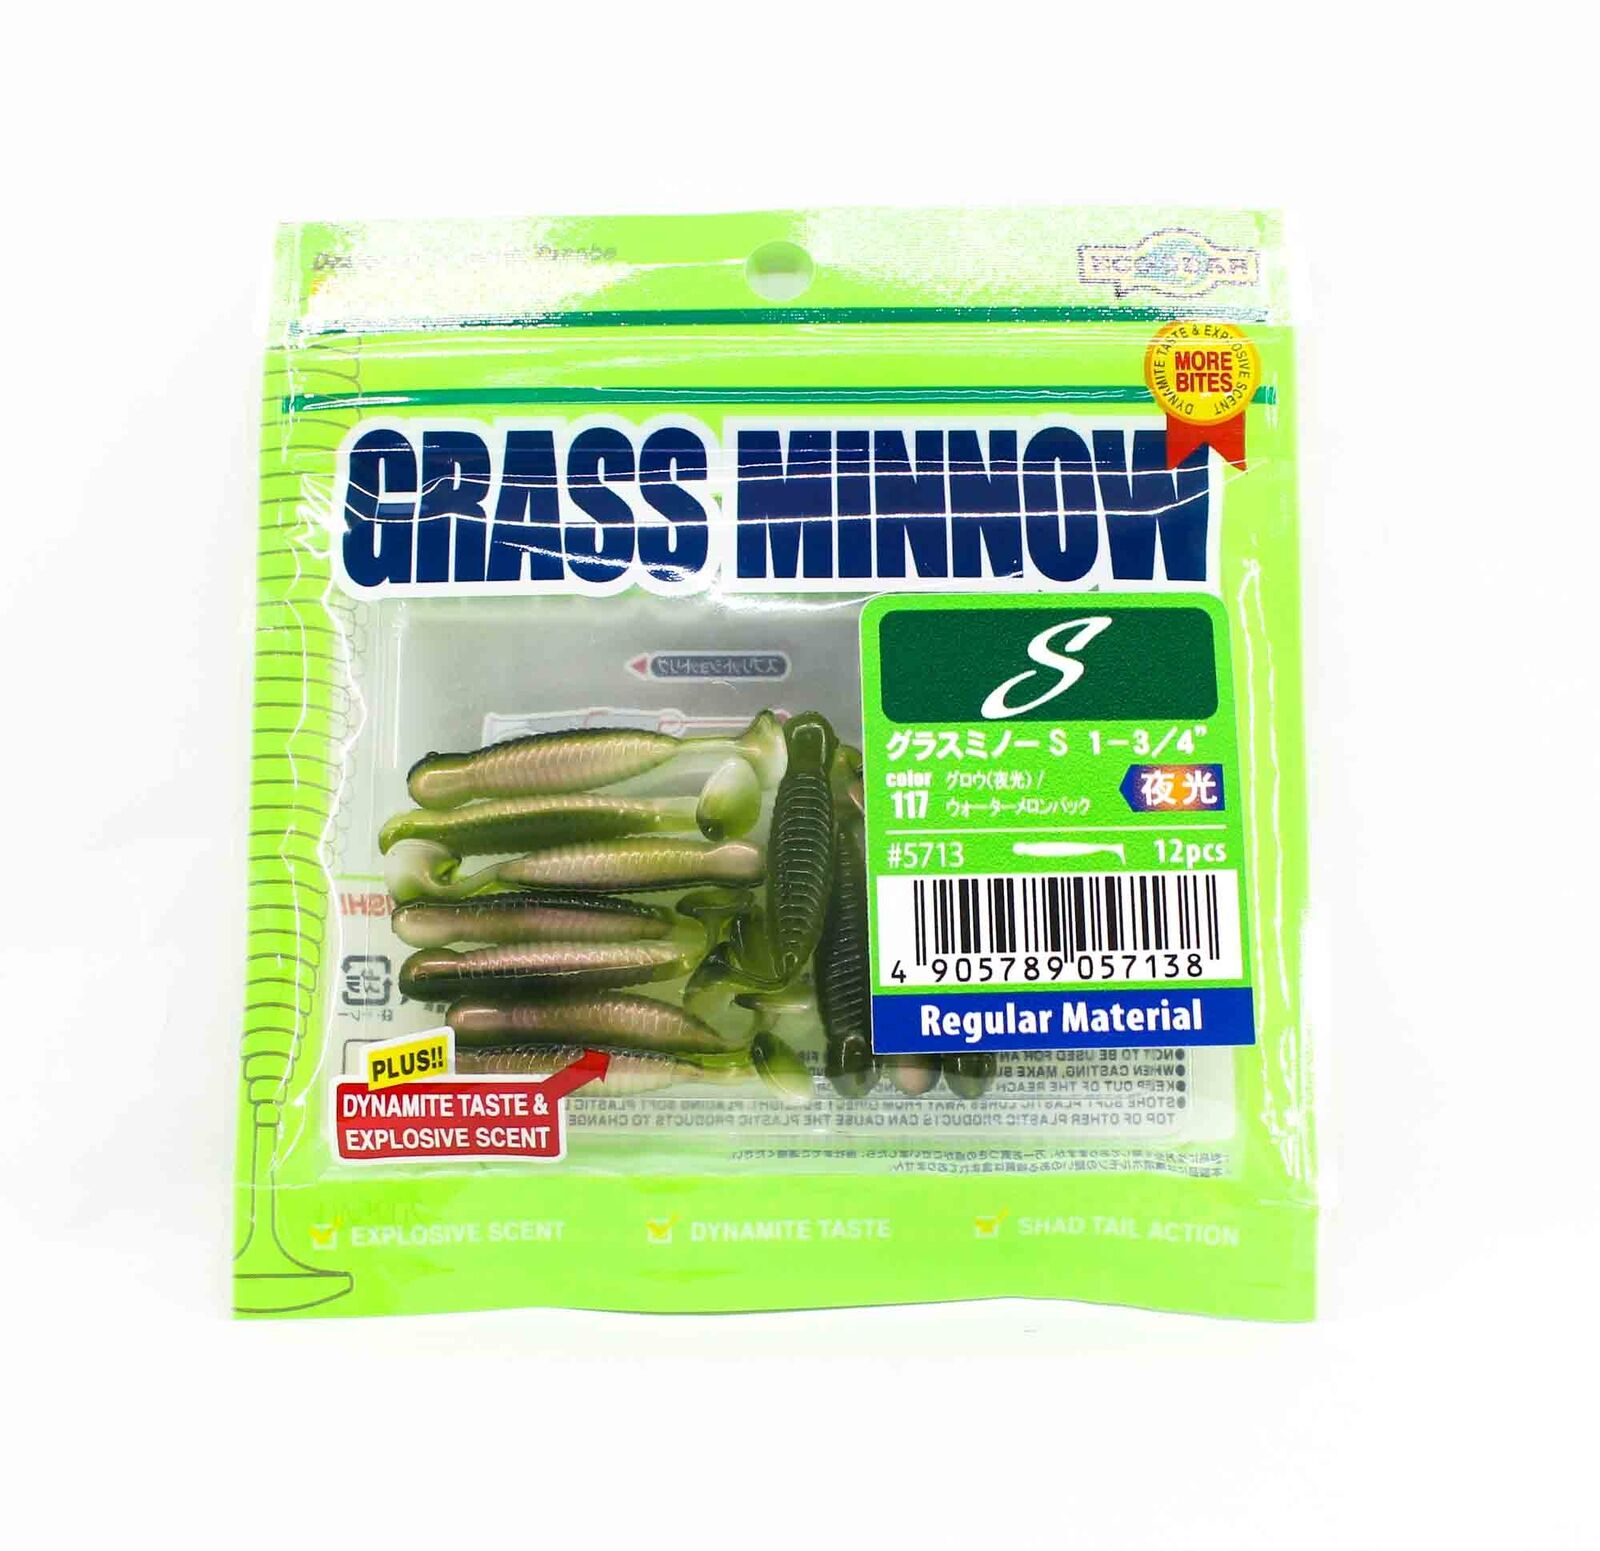 Ecogear Grass Minnow Soft Lures